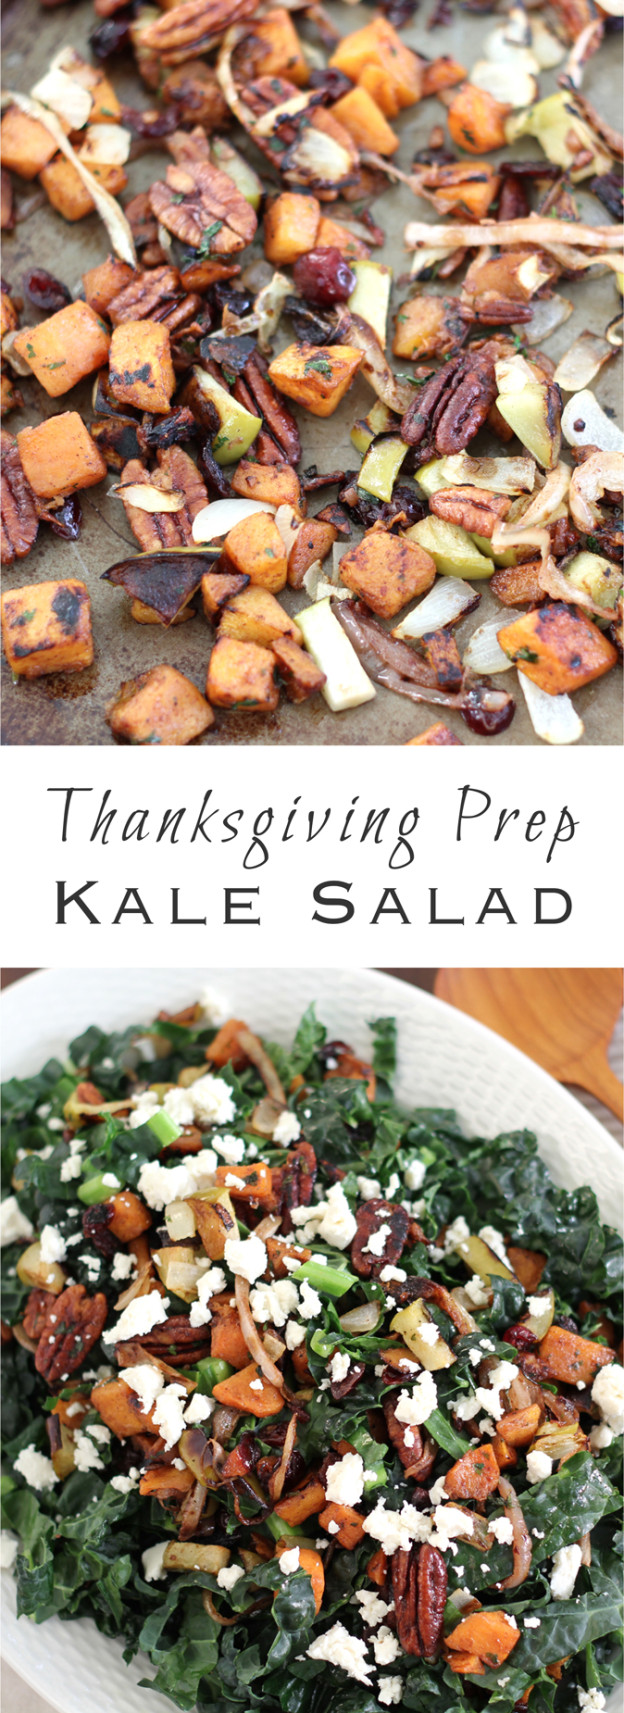 Thanksgiving Prep Kale Salad - Suwannee Rose